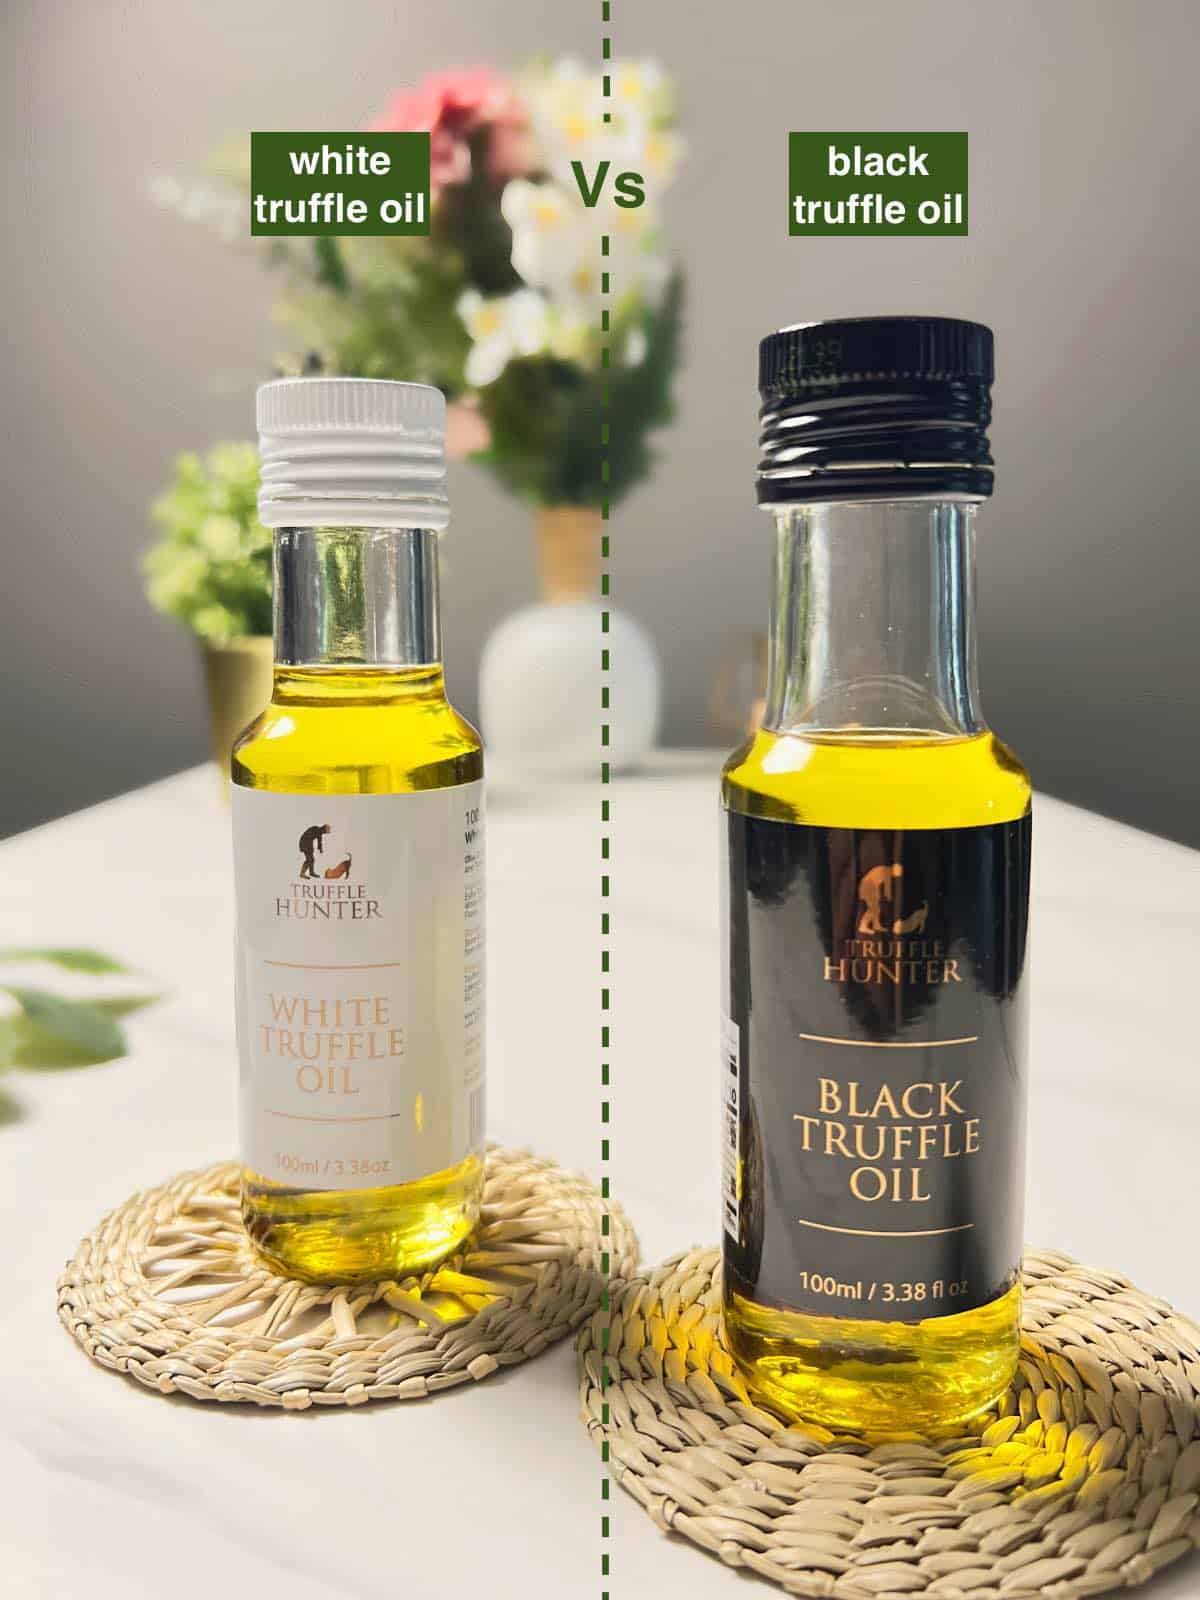 a bottle of white truffle oil alongside a bottle of black truffle oil